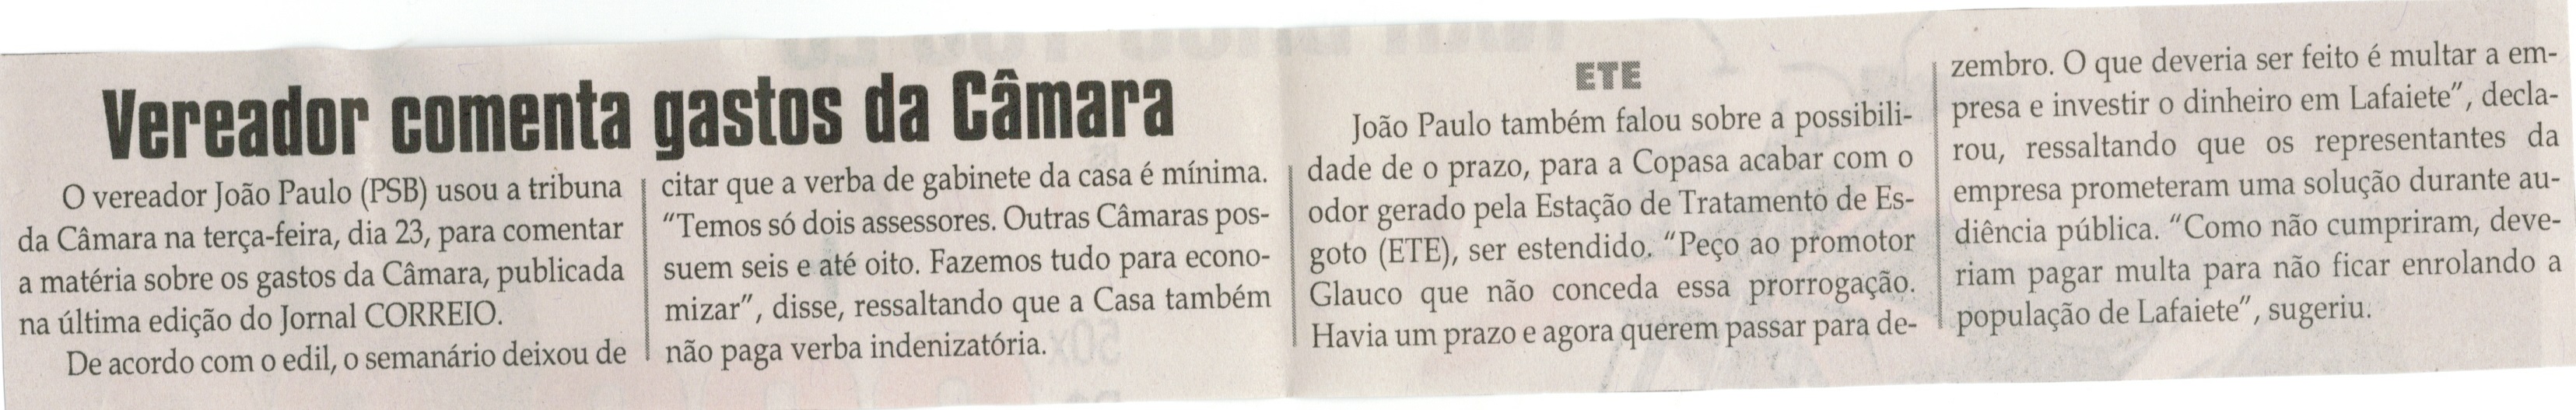 Vereador comenta gastos da Câmara. Jornal Correio da Cidade, Conselheiro Lafaiete,  03 out. 2014, p. 4.